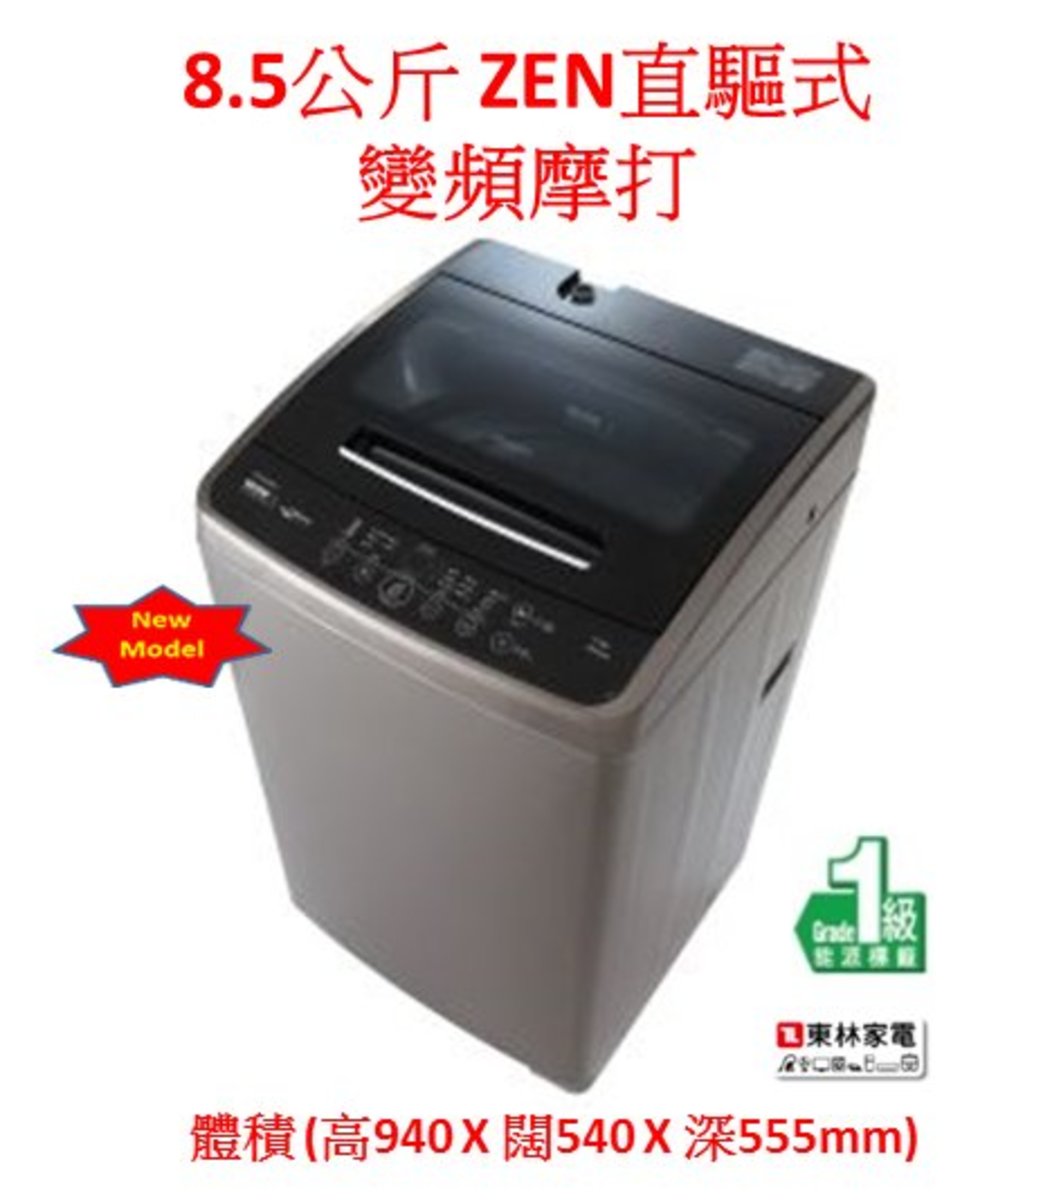 惠而浦 8 5公斤zen直驅式變頻摩打vemc851 香港電視hktvmall 網上購物